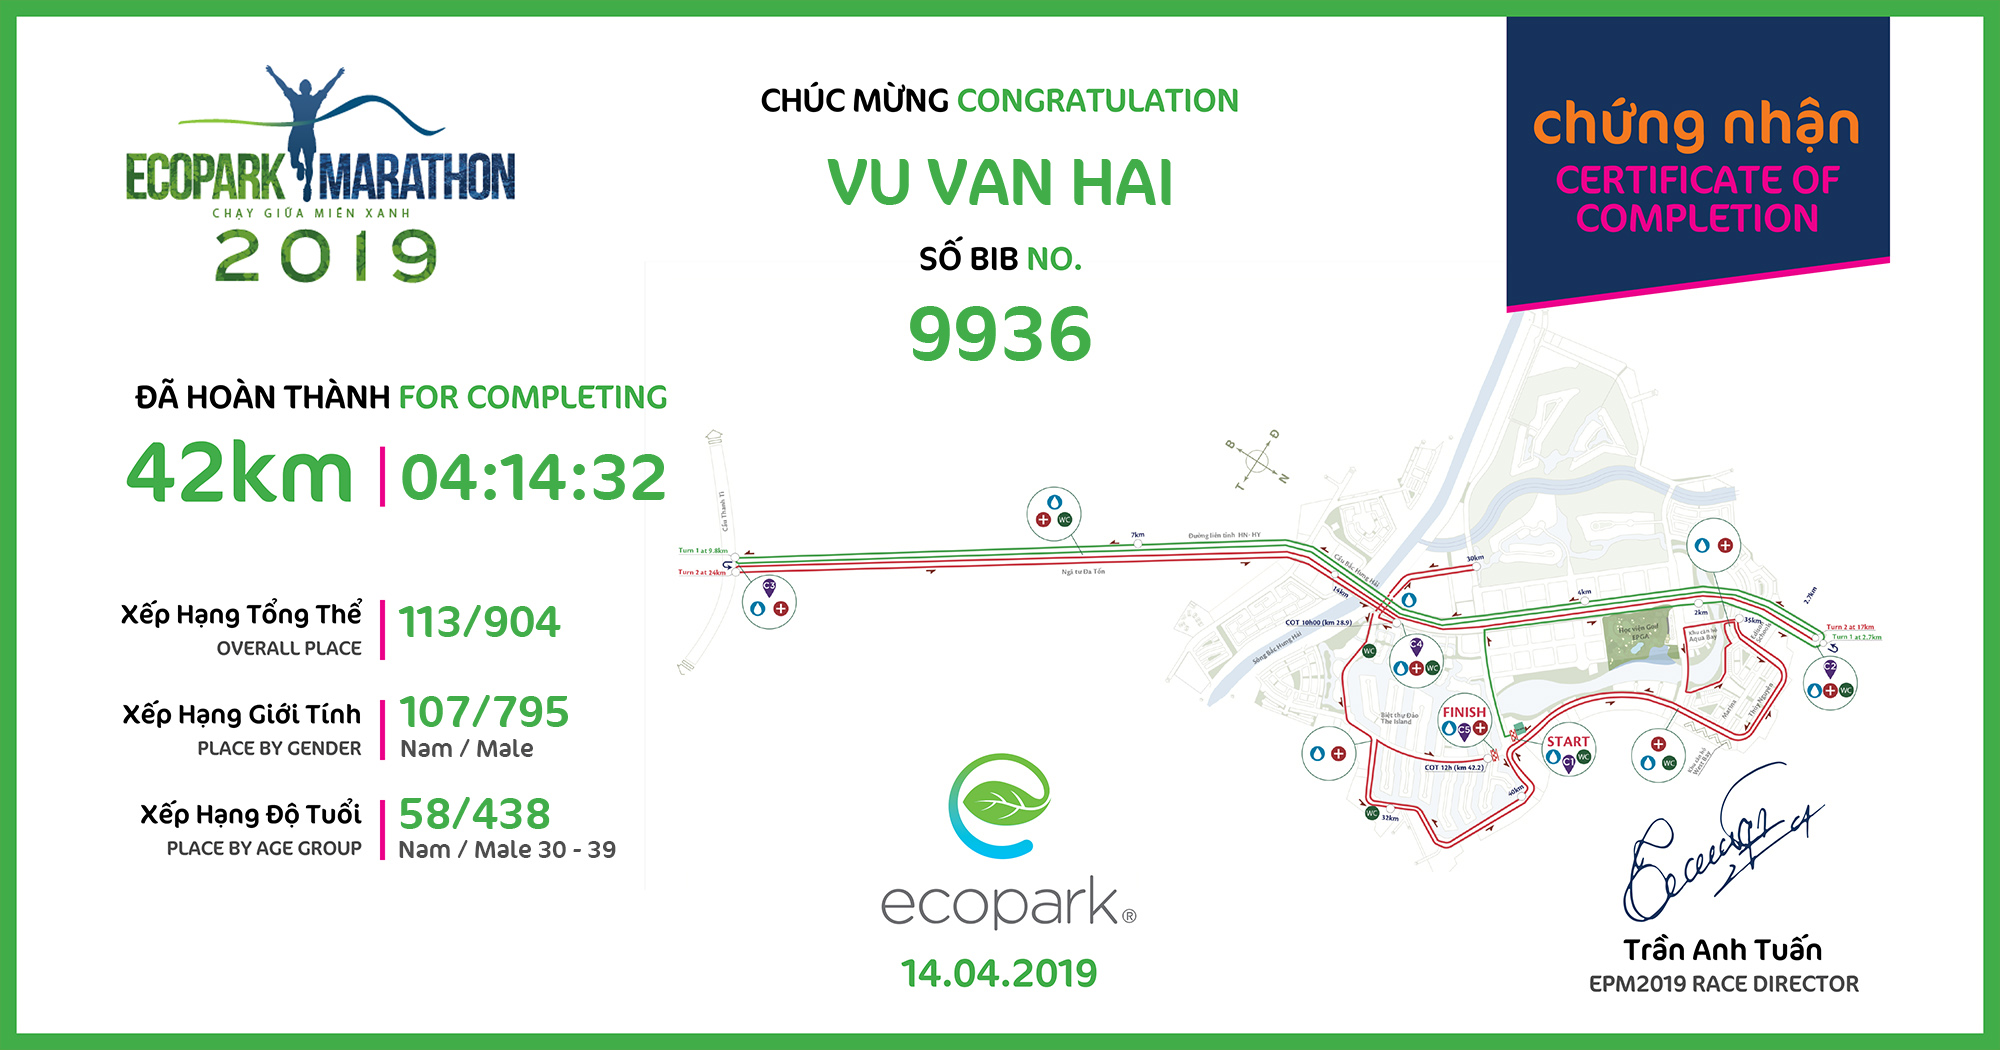 9936 - Vu Van Hai